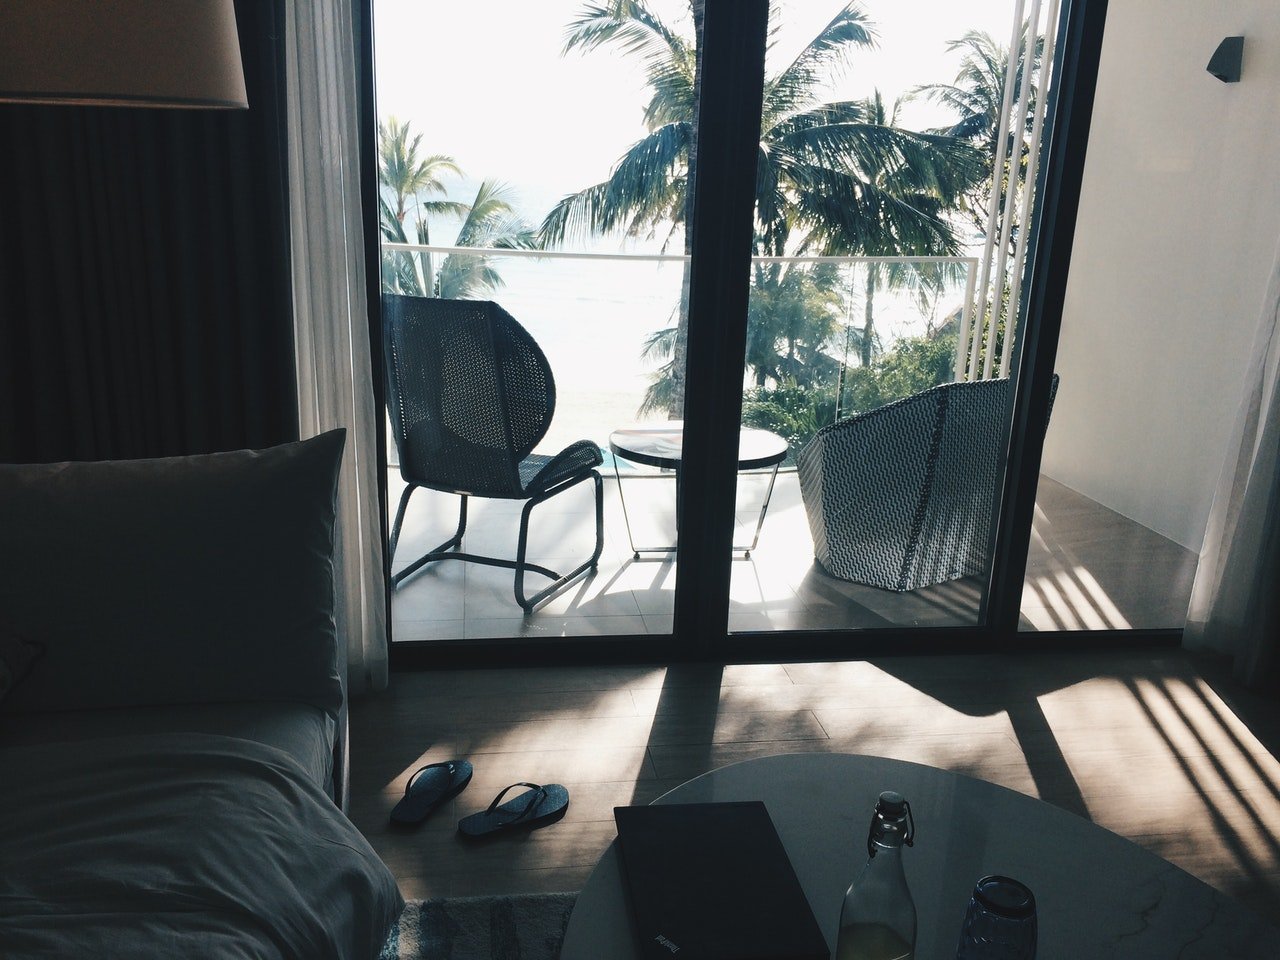 Apartamento con vista a la playa. | Foto: Pexels